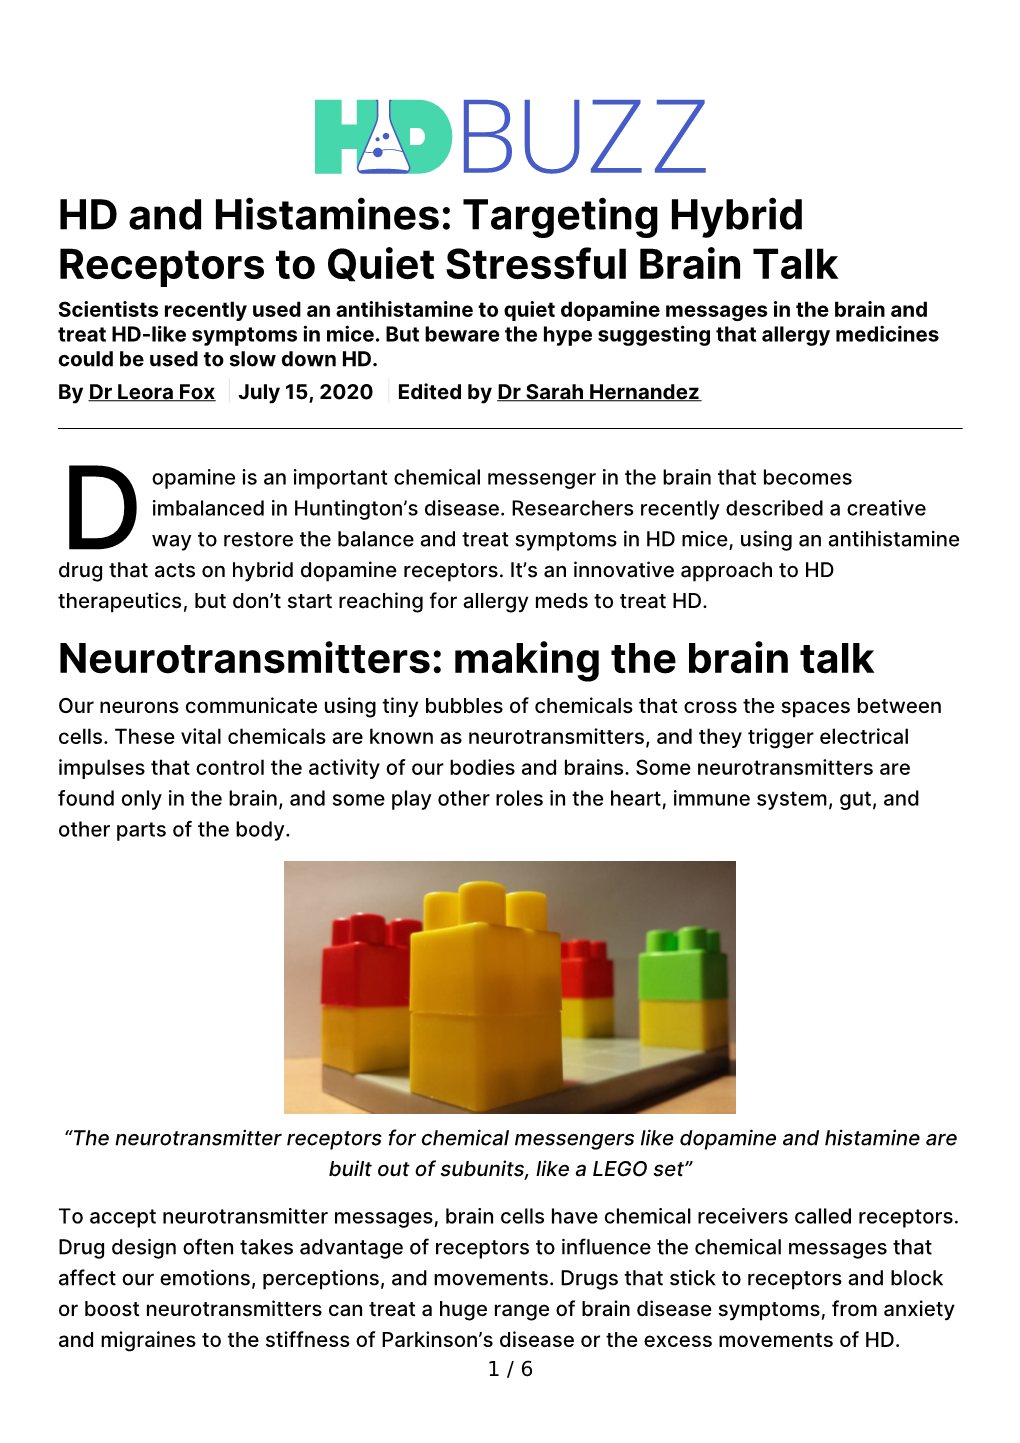 Targeting Hybrid Receptors to Quiet Stressful Brain Talk